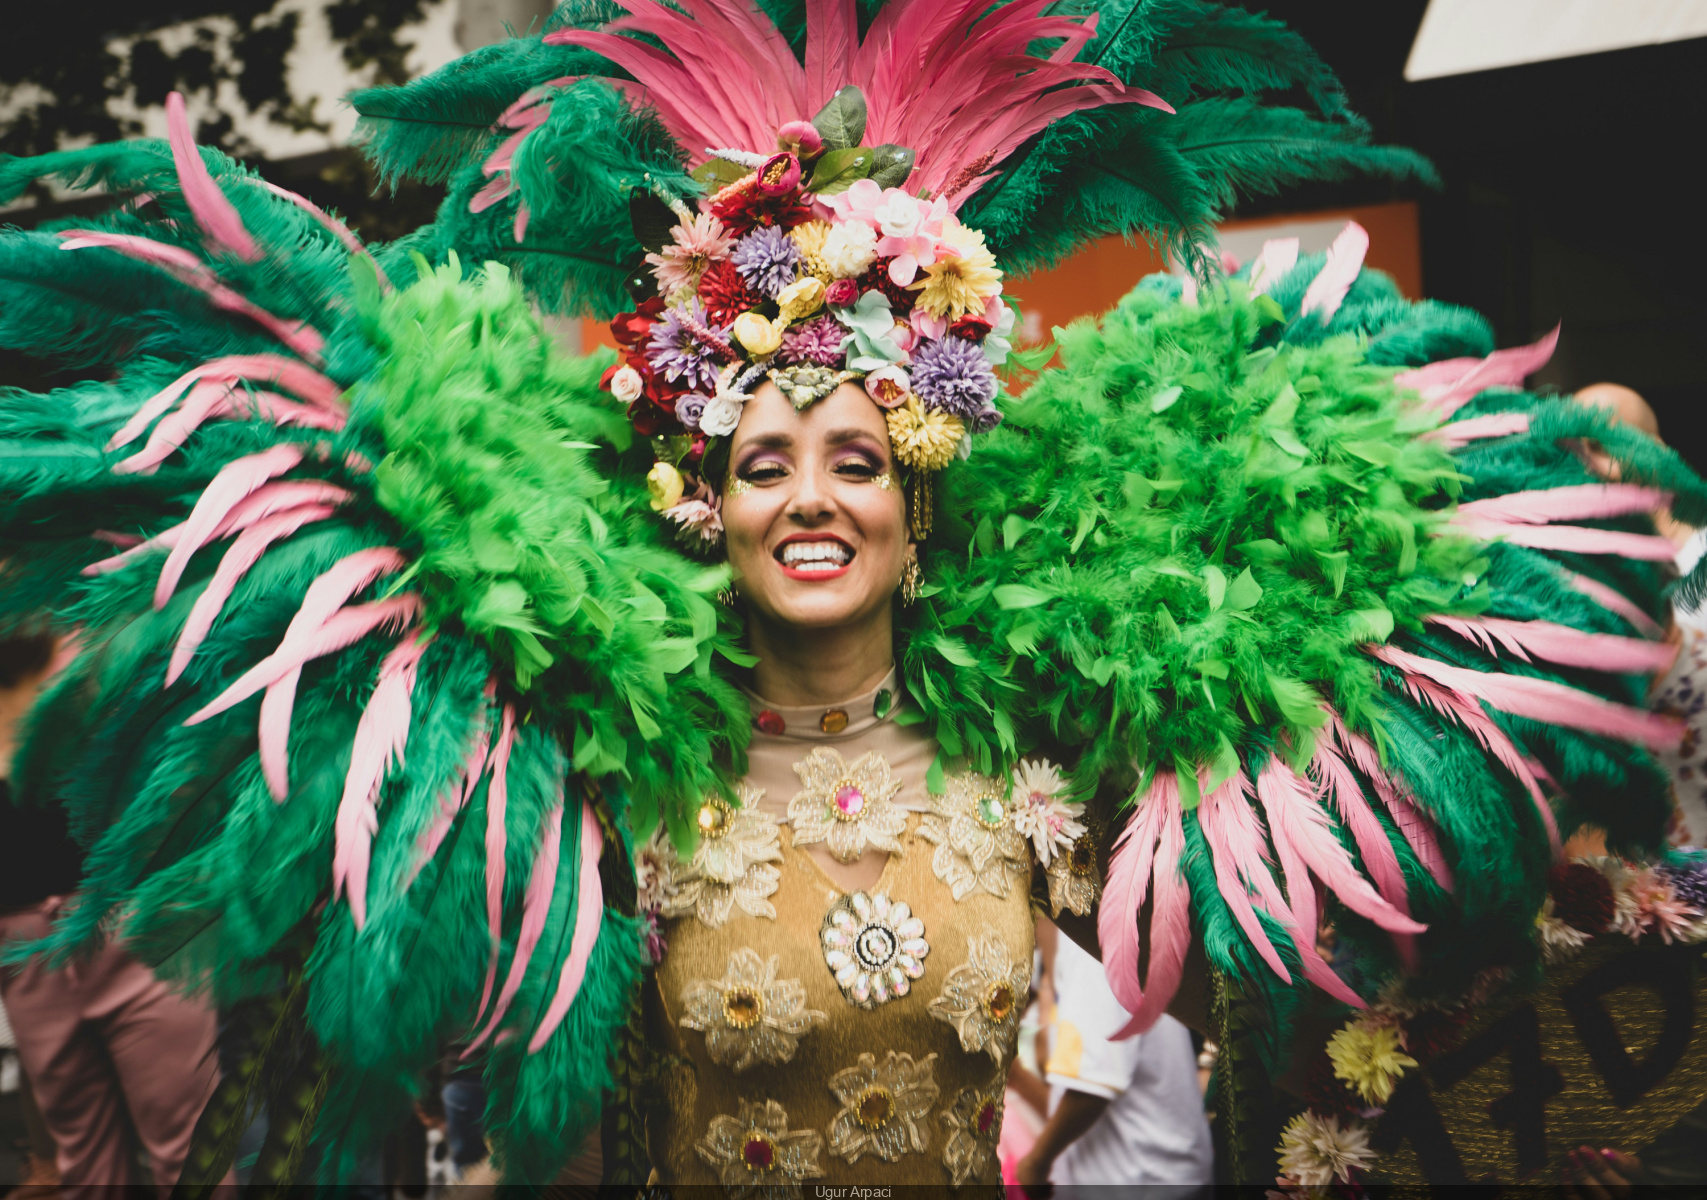 Brazil celebrates the return of Carnival